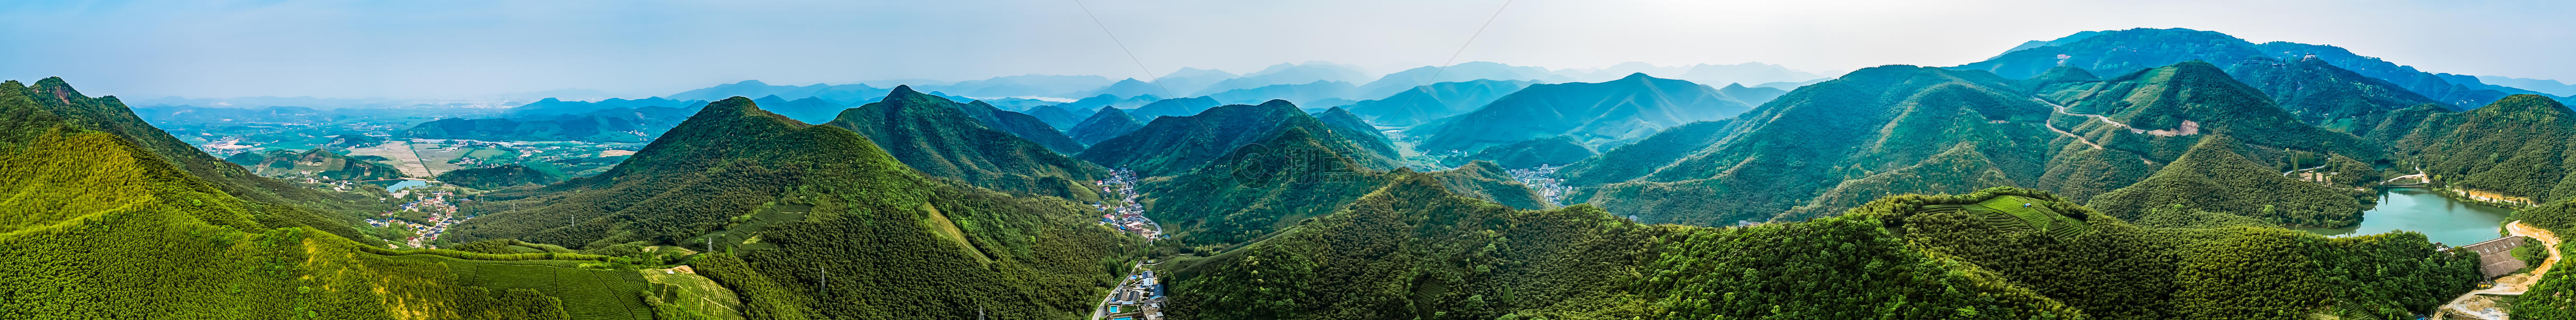 莫干山顶峰全景自然风景图片素材免费下载